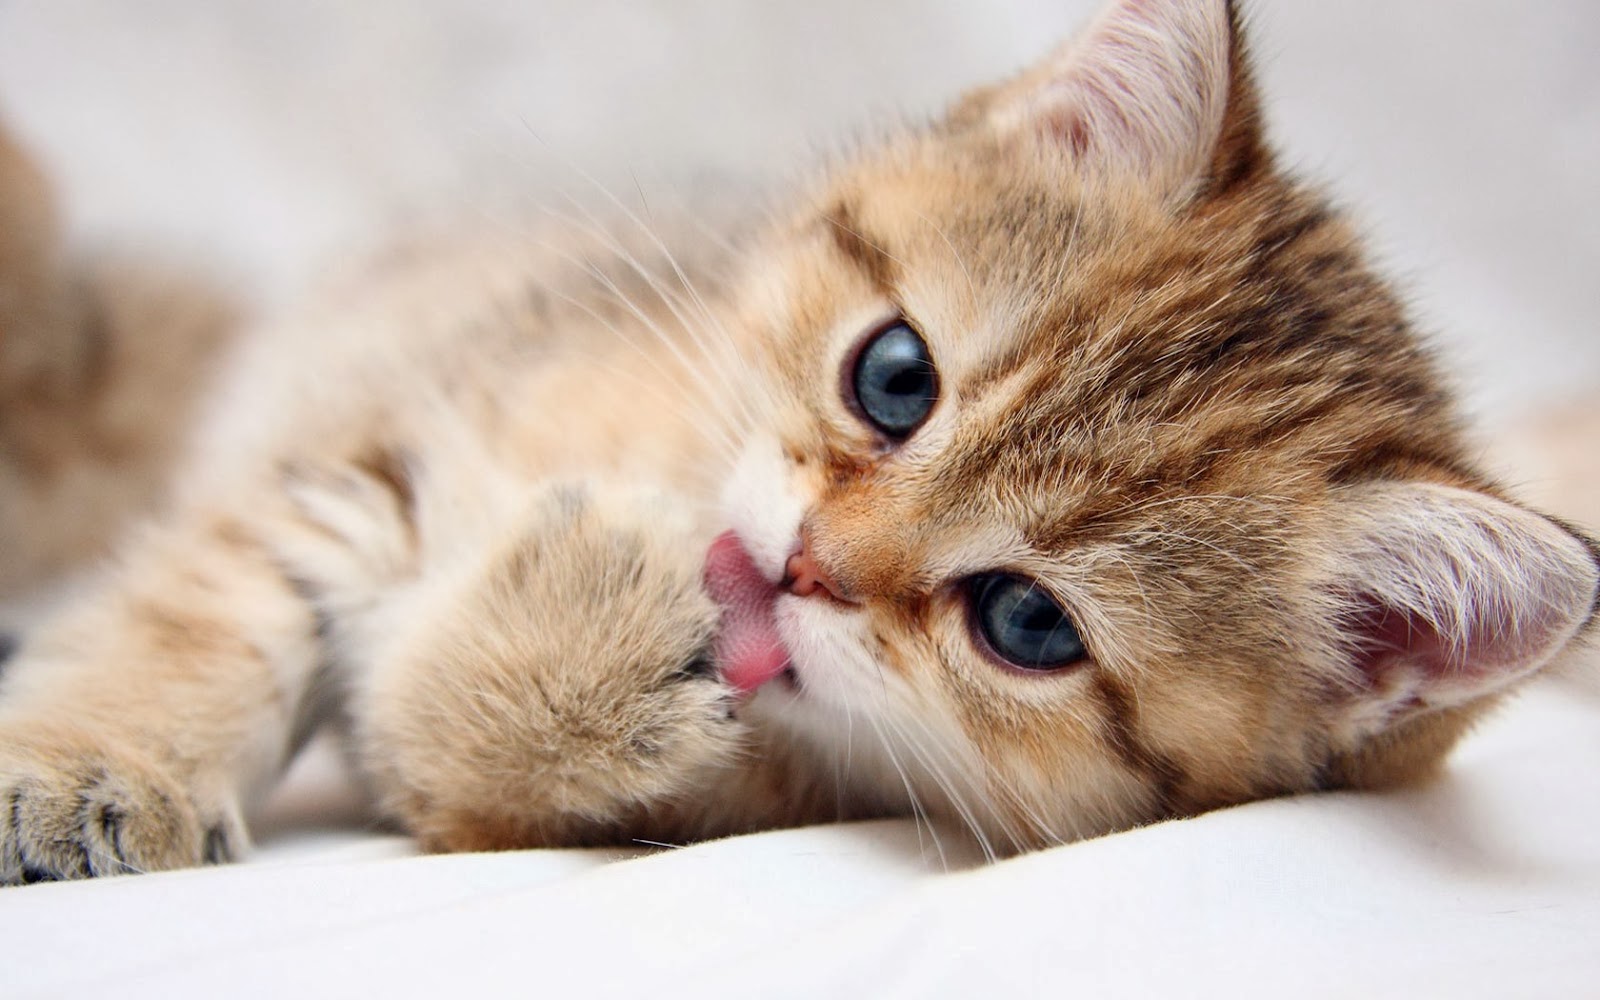 12 Fakta Menarik Dibalik Kucing Lucu Dan Imut Jatikcom